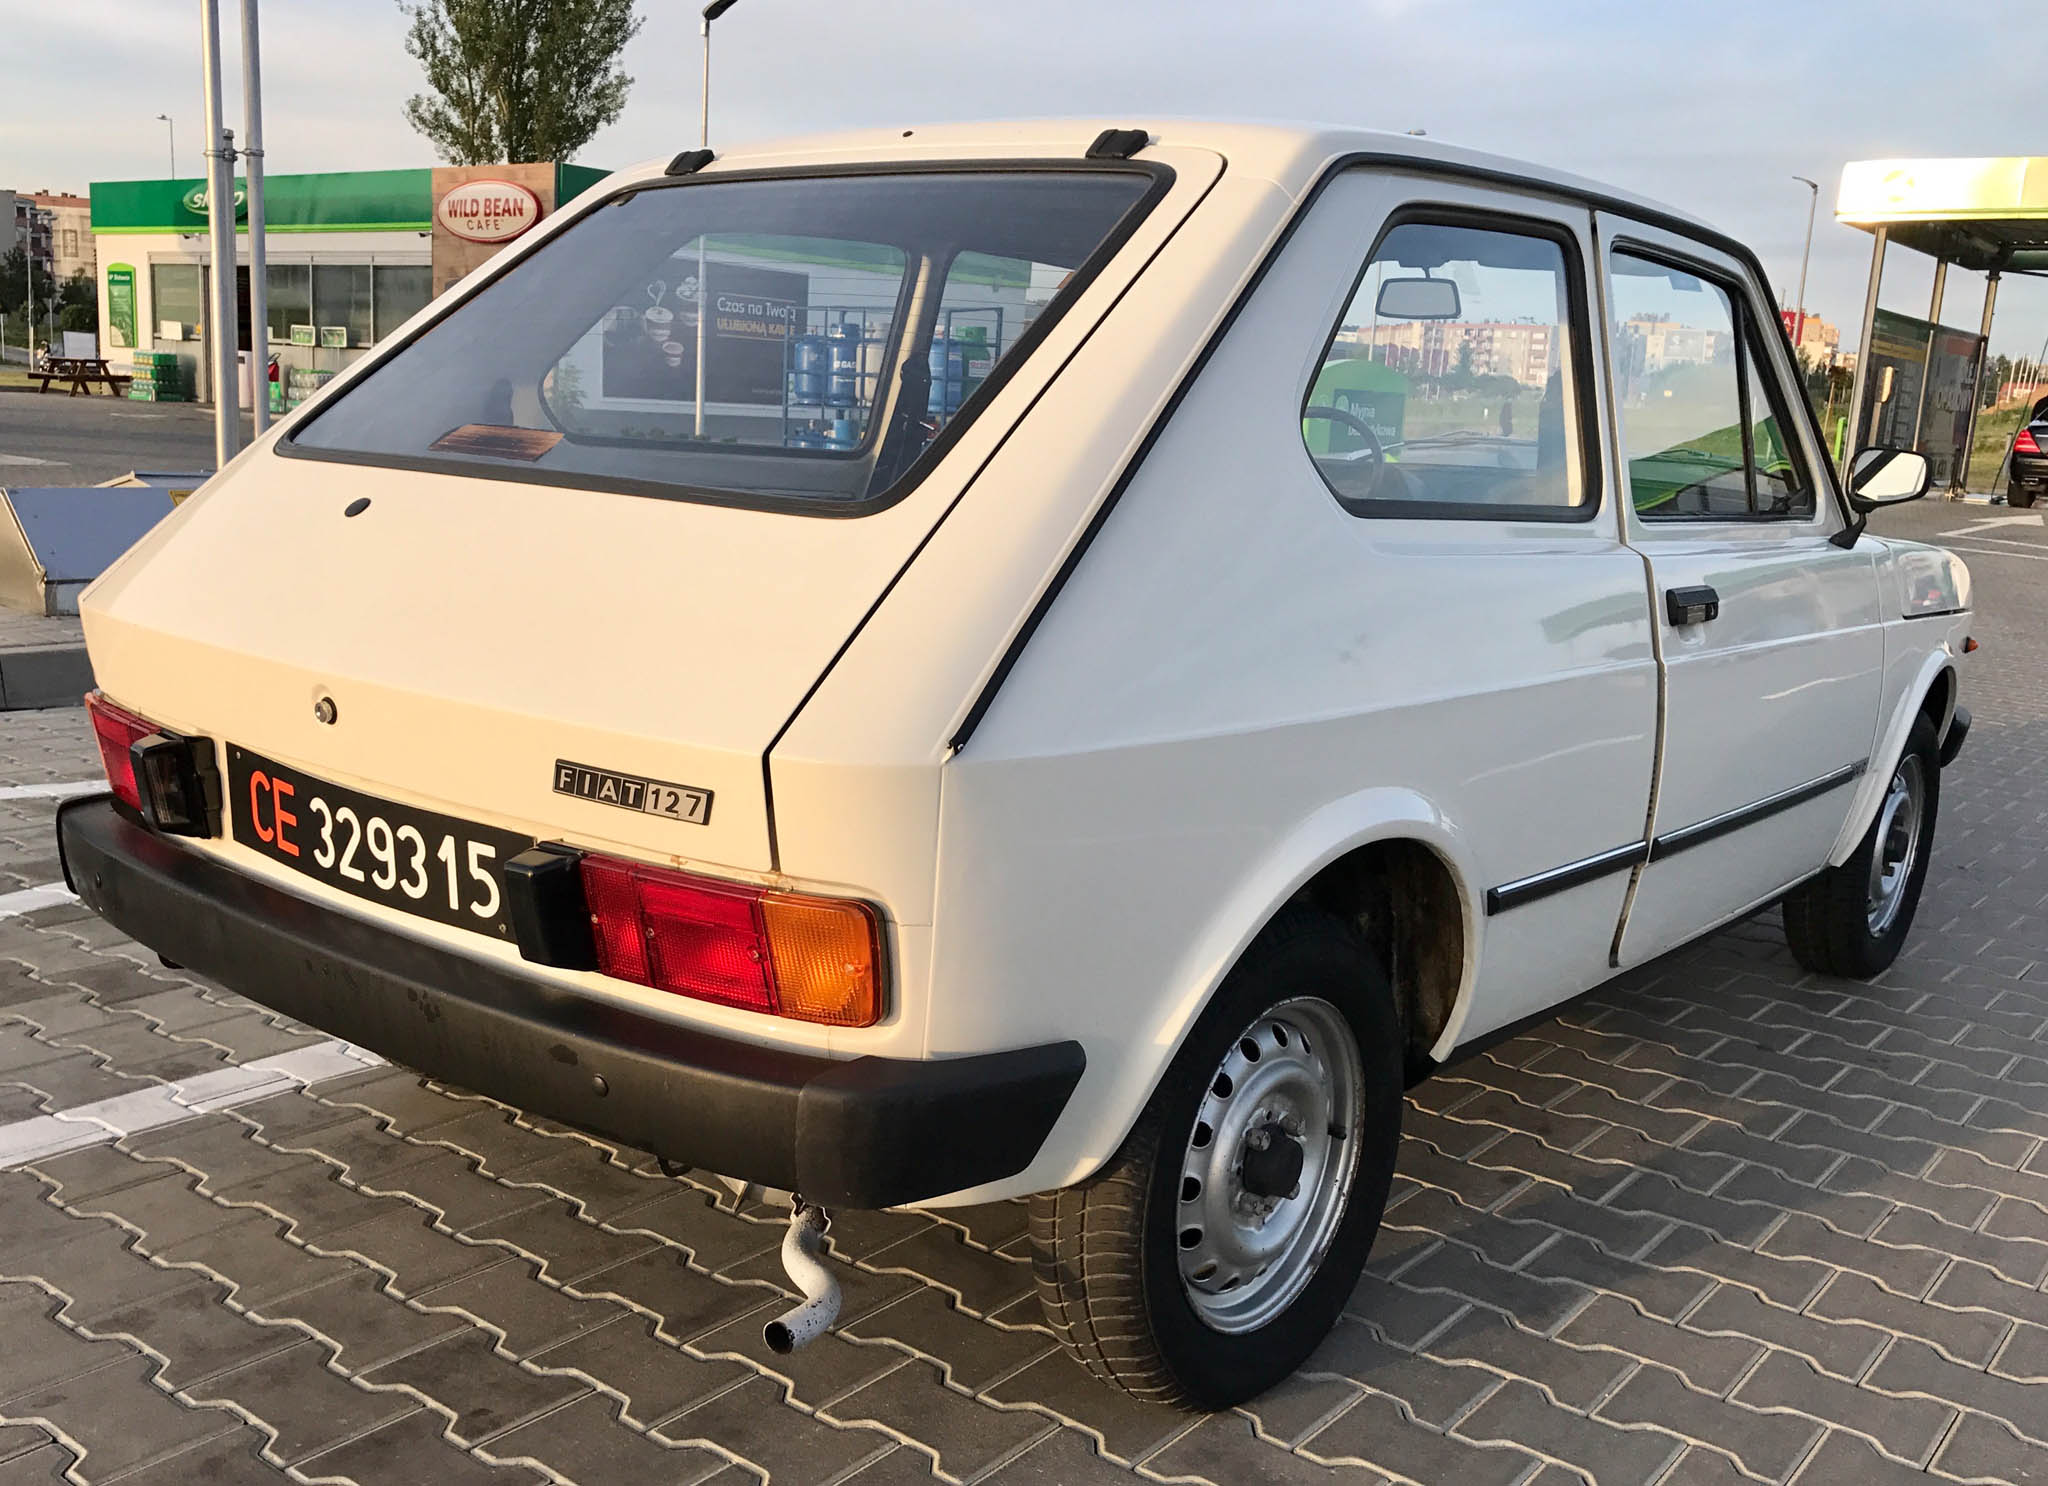 Fiat 127 1980 12900 PLN Kielce Giełda klasyków